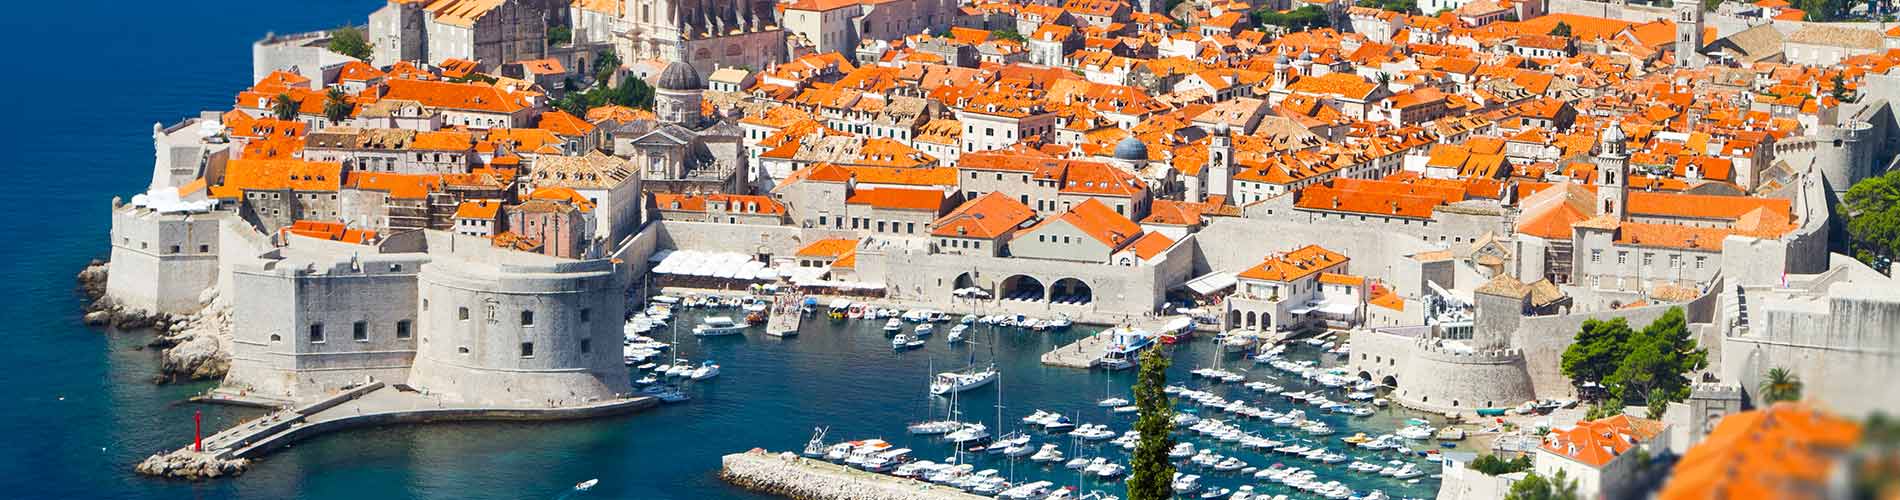 The Old Town of Dubrovnik, Croatia.jpg